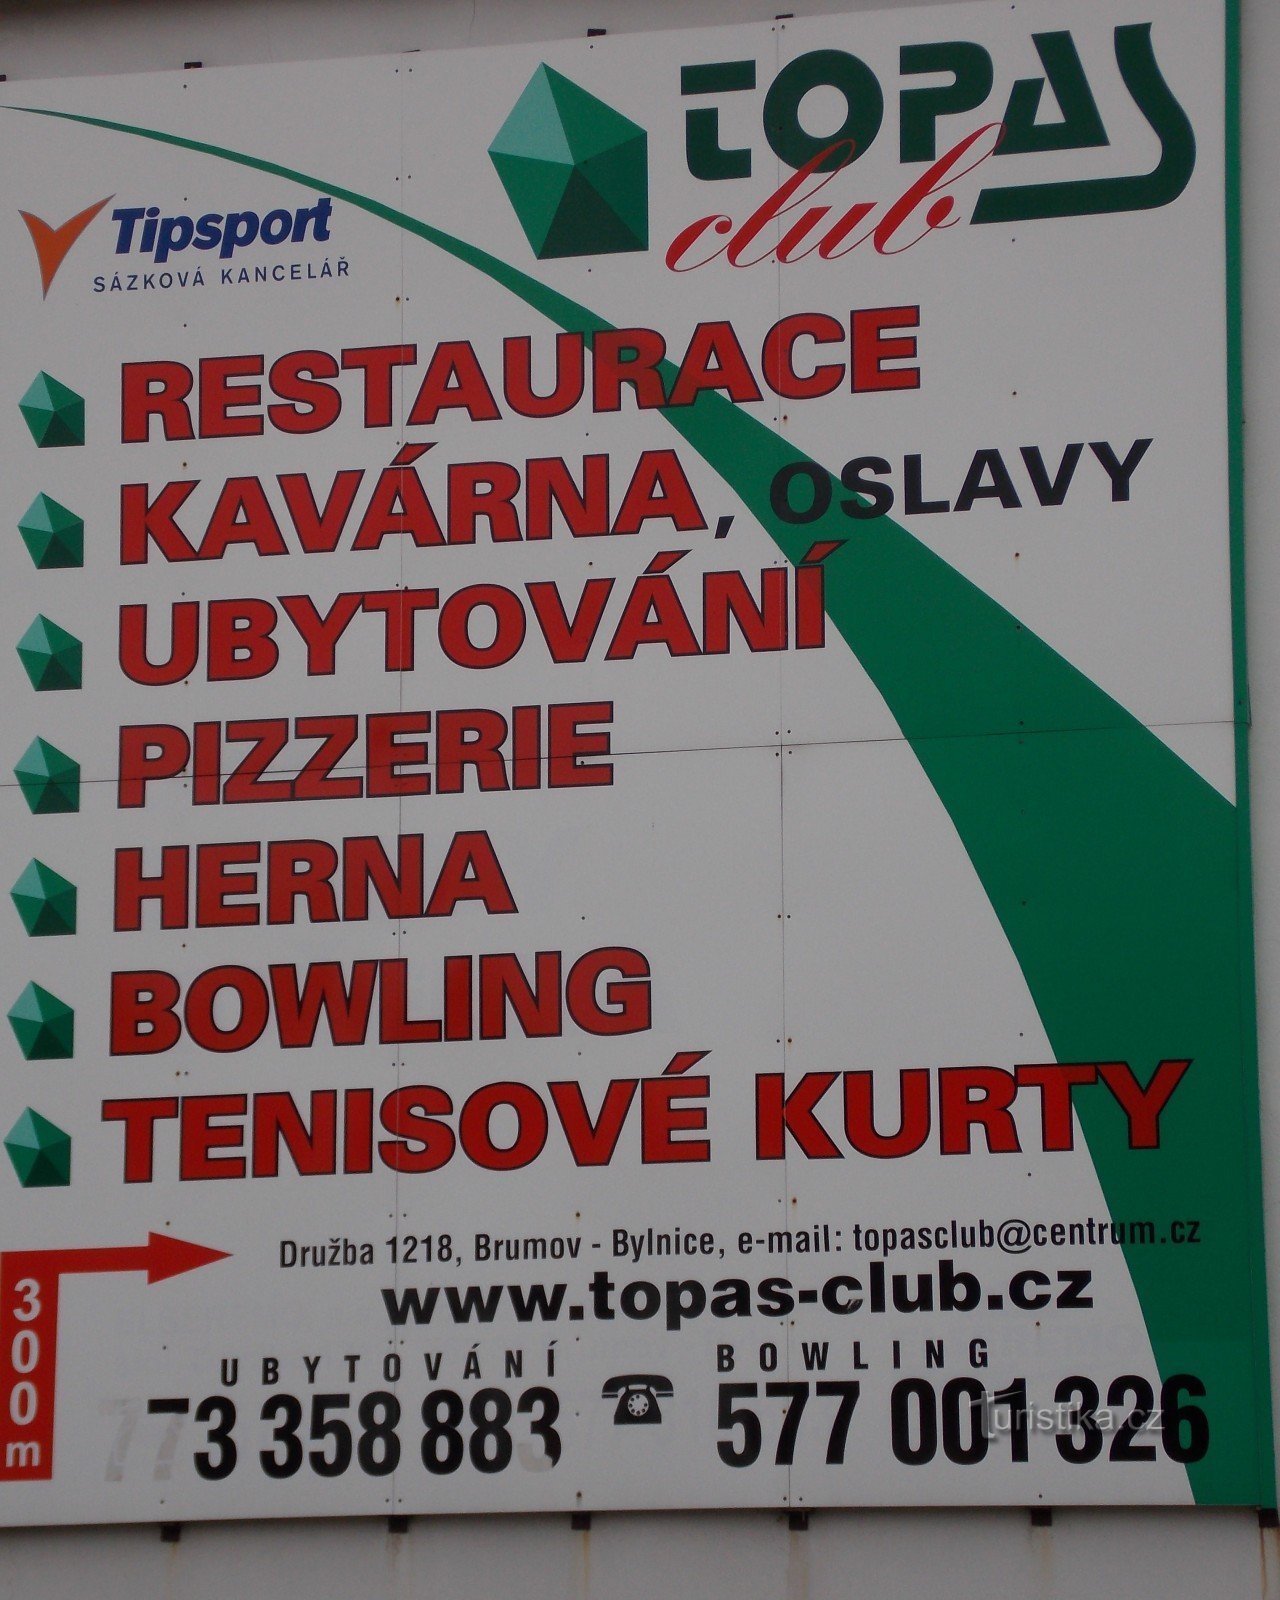 Topas Club i Brumov - Bylnice